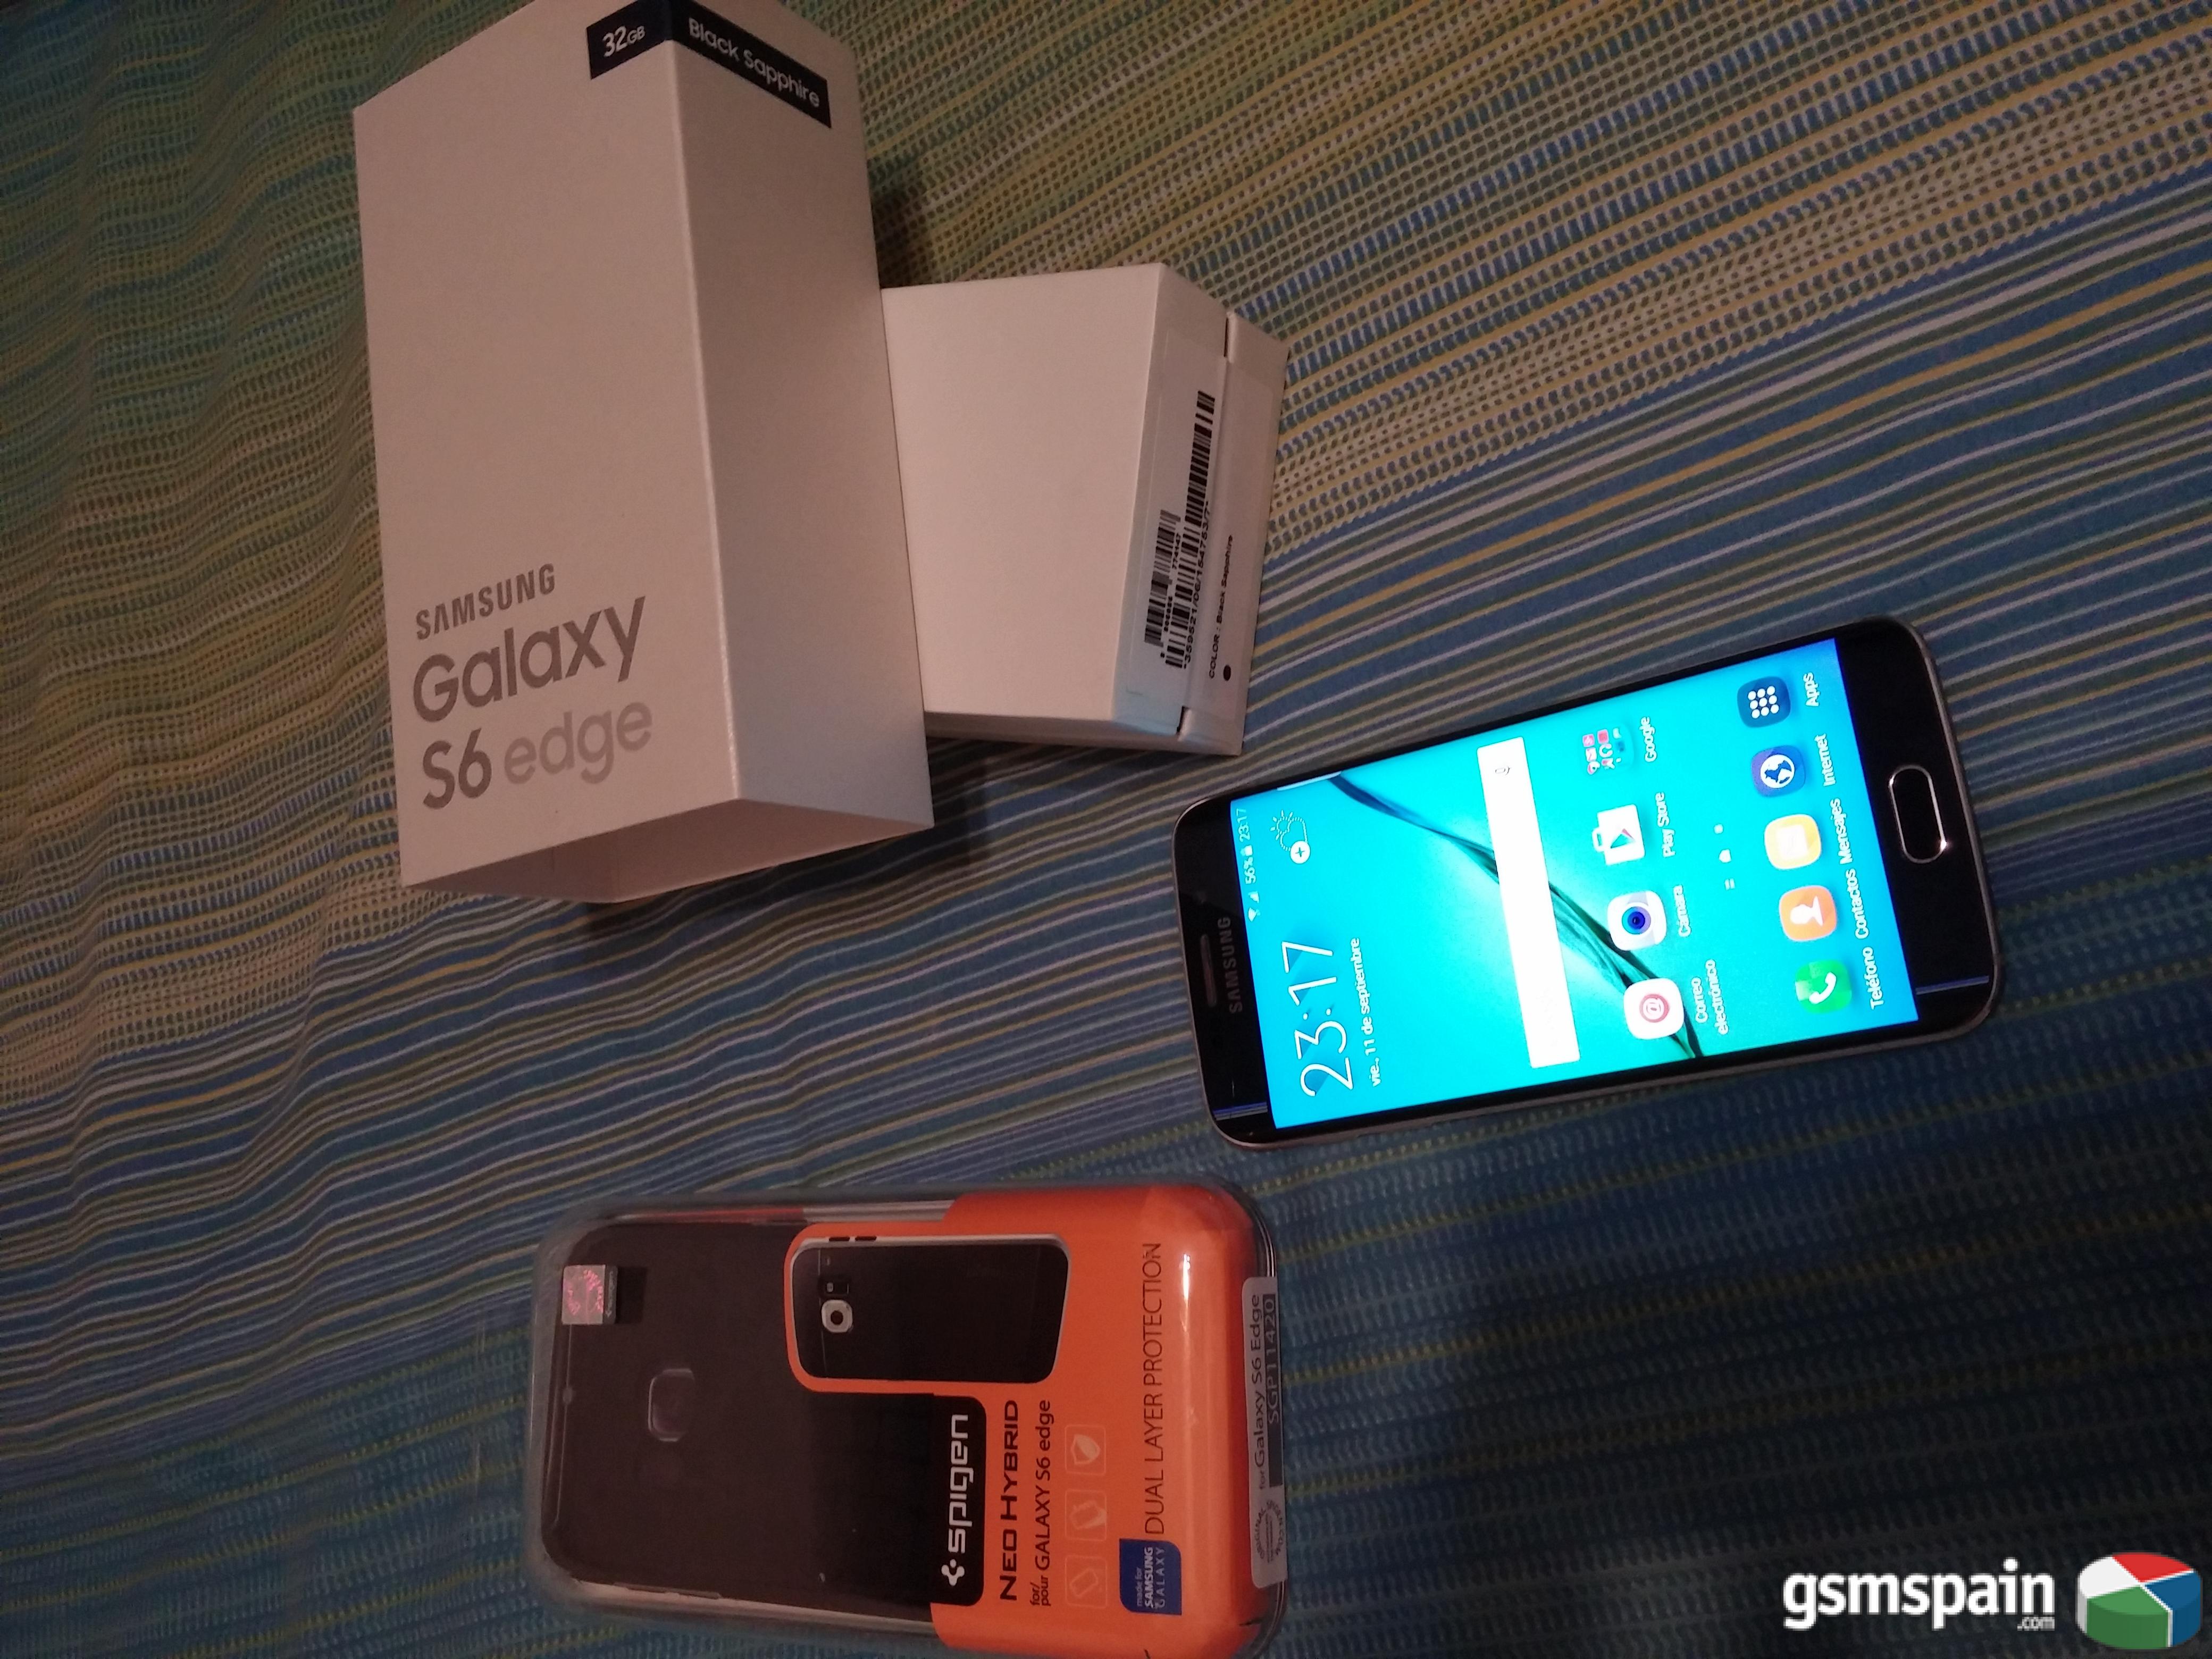 [VENDO] Samsung Galaxy S6 EDGE 32gb BLACK SAPHIRE (El mas barato del foro)